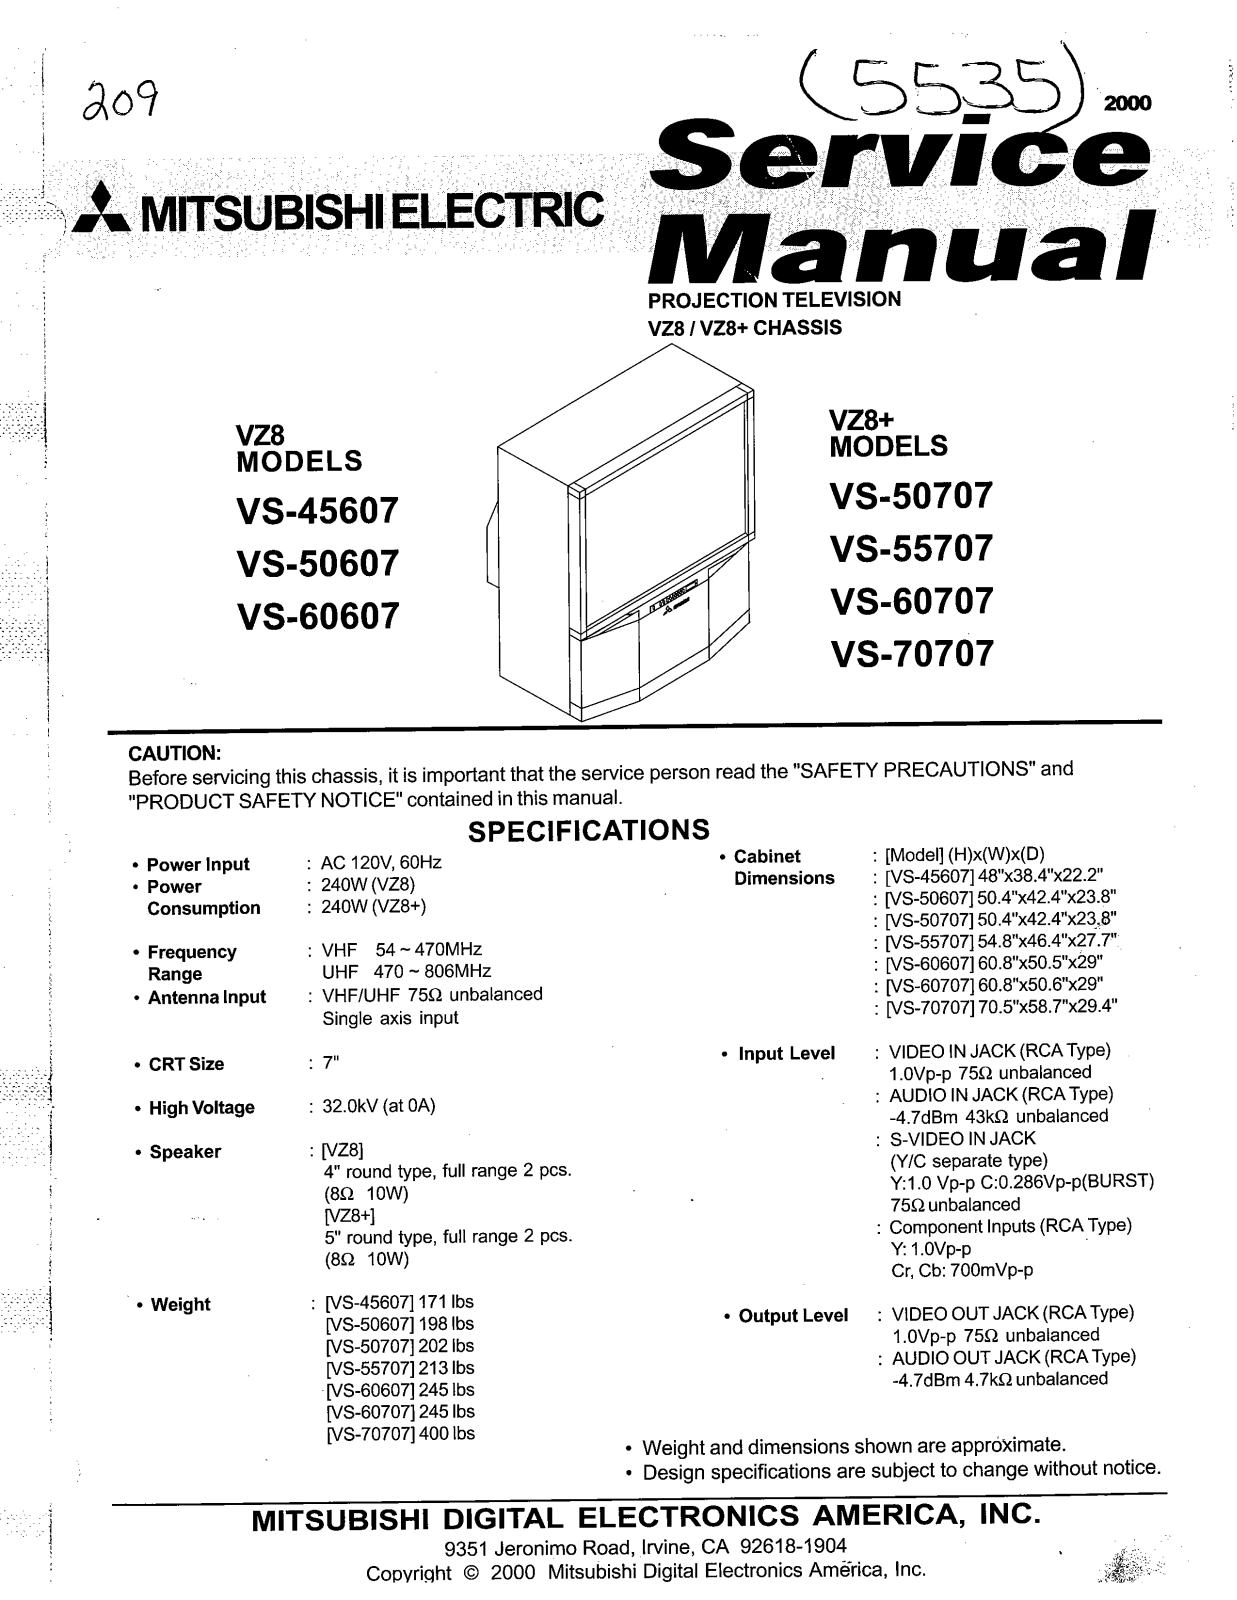 mitsubishi VS45604, VS50607, VS60607, VS50707, VS55707 Service Manual